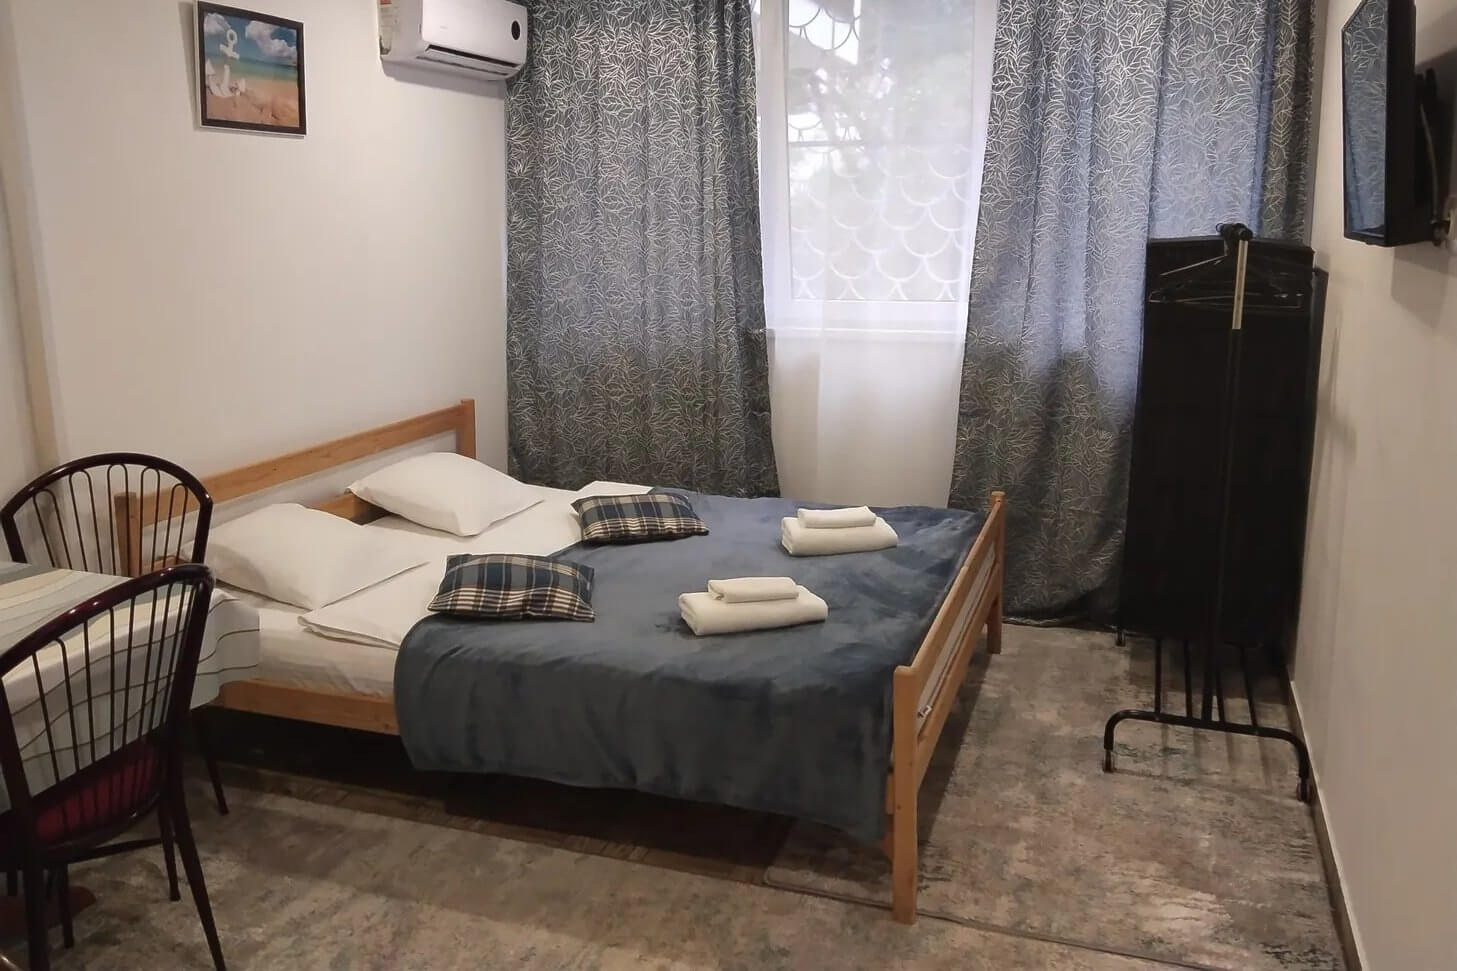 Спальня: кровать с деревянным основанием, вешалка для вещей, зашторенное окно.